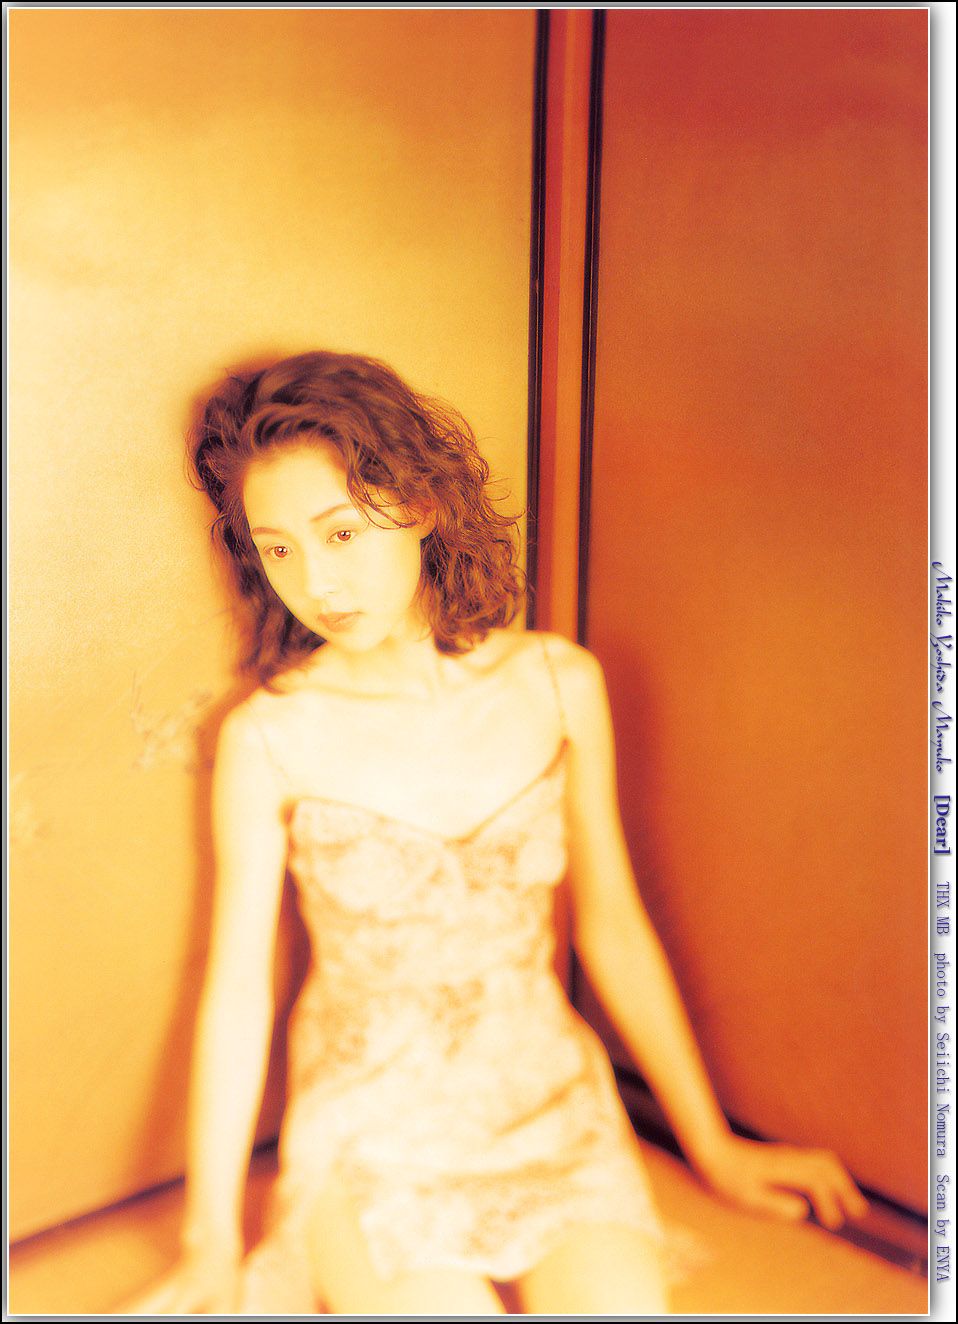 吉田真希子性感写真,最新照片,高清图片